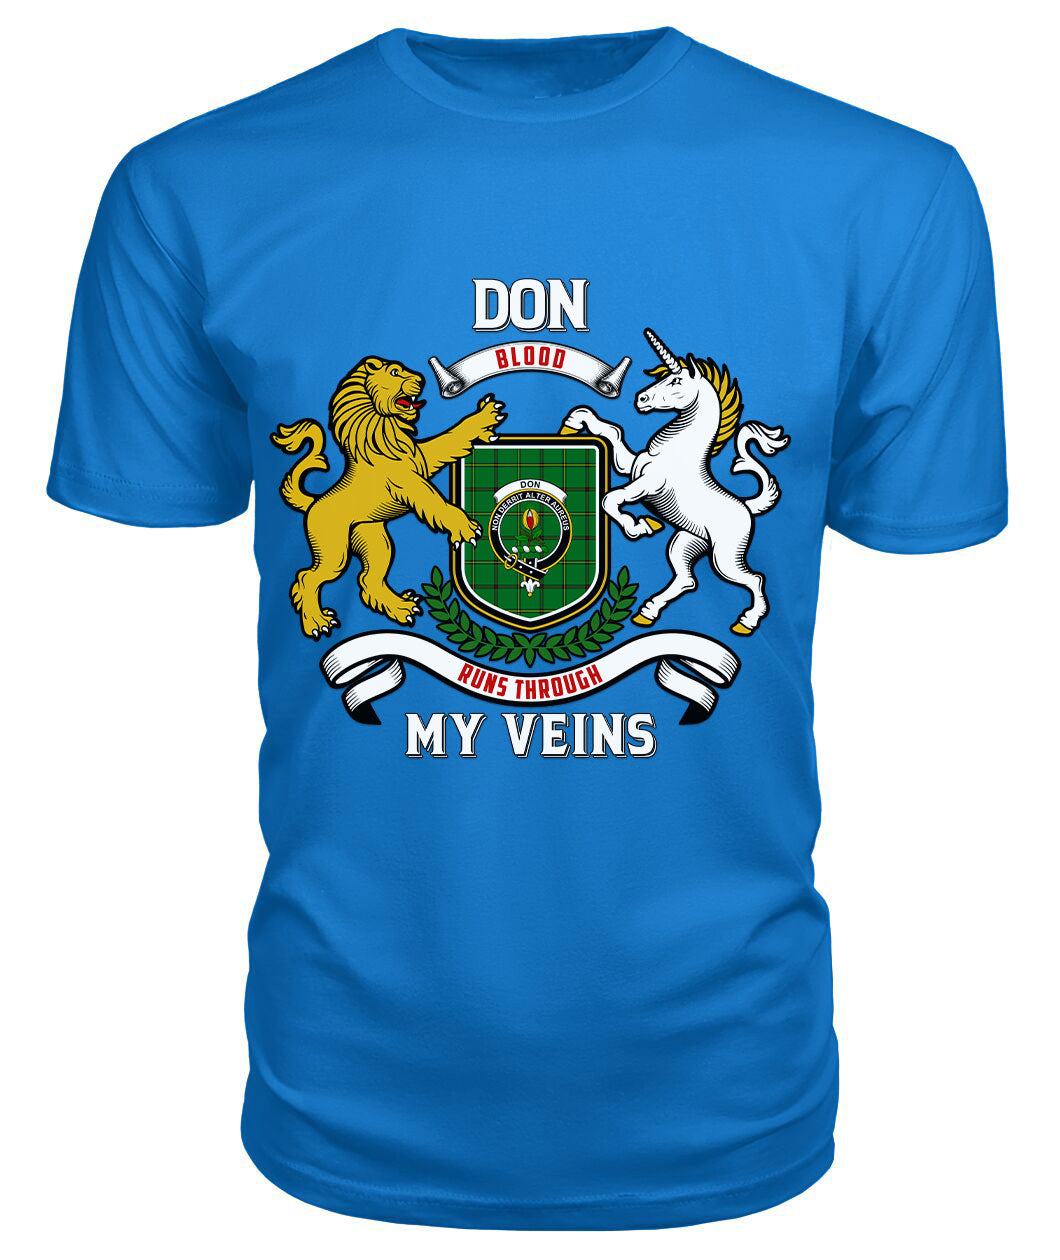 Don Tartan Crest 2D T-shirt - Blood Runs Through My Veins Style